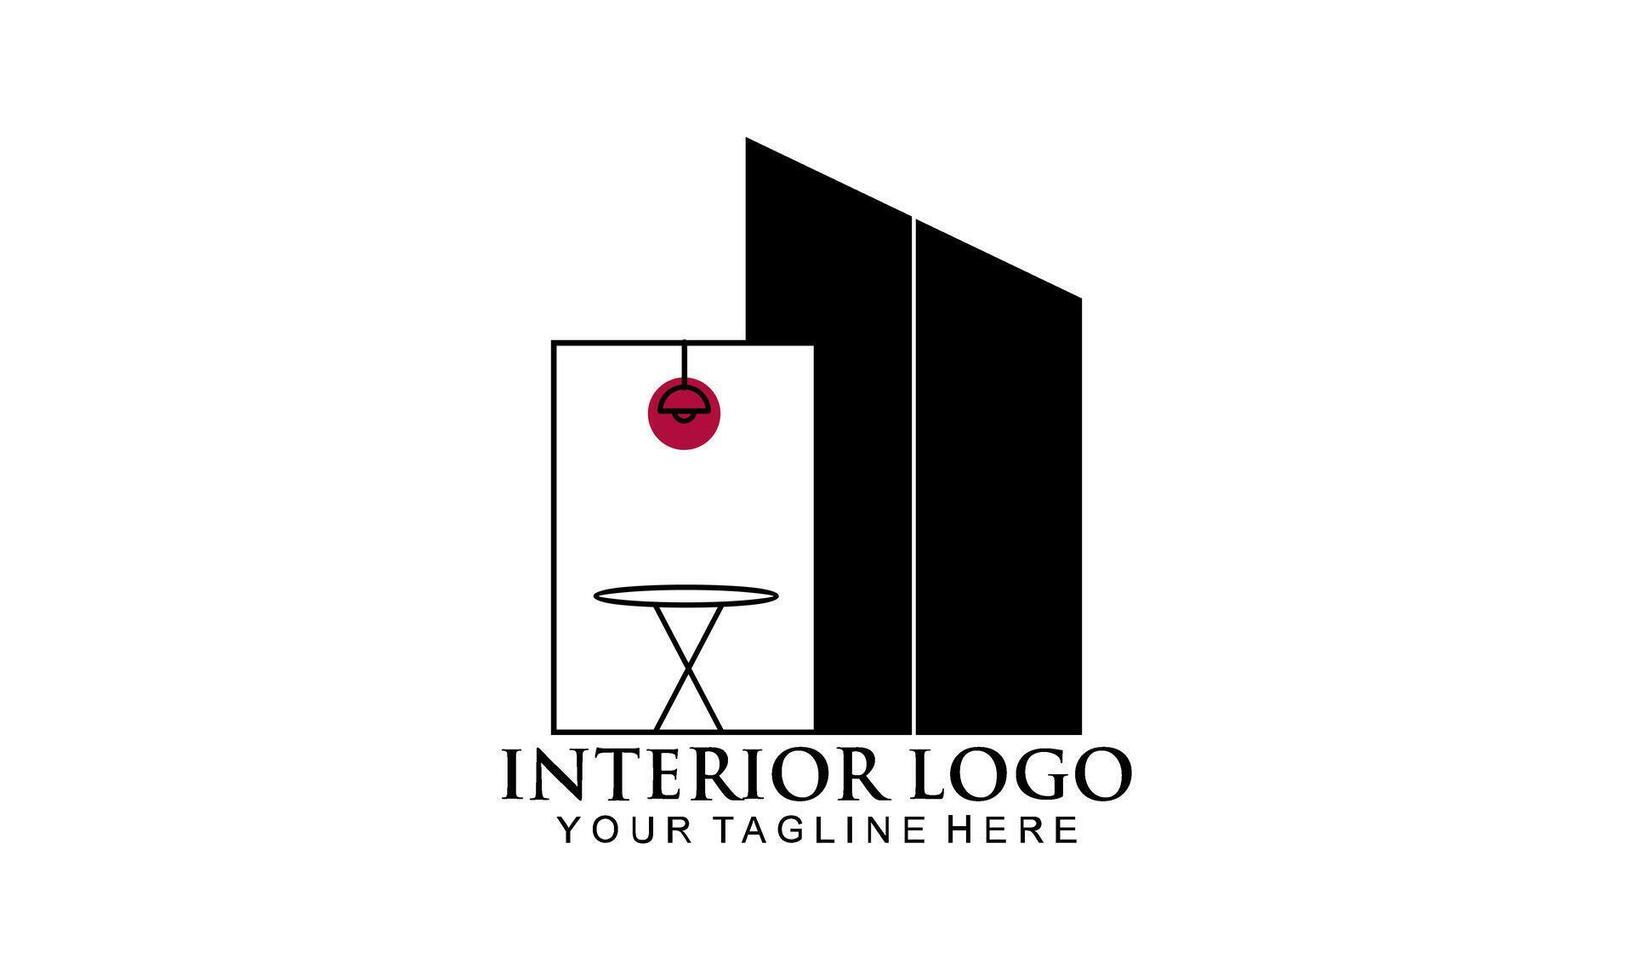 sala interior, design de logotipo de galeria de móveis vetor